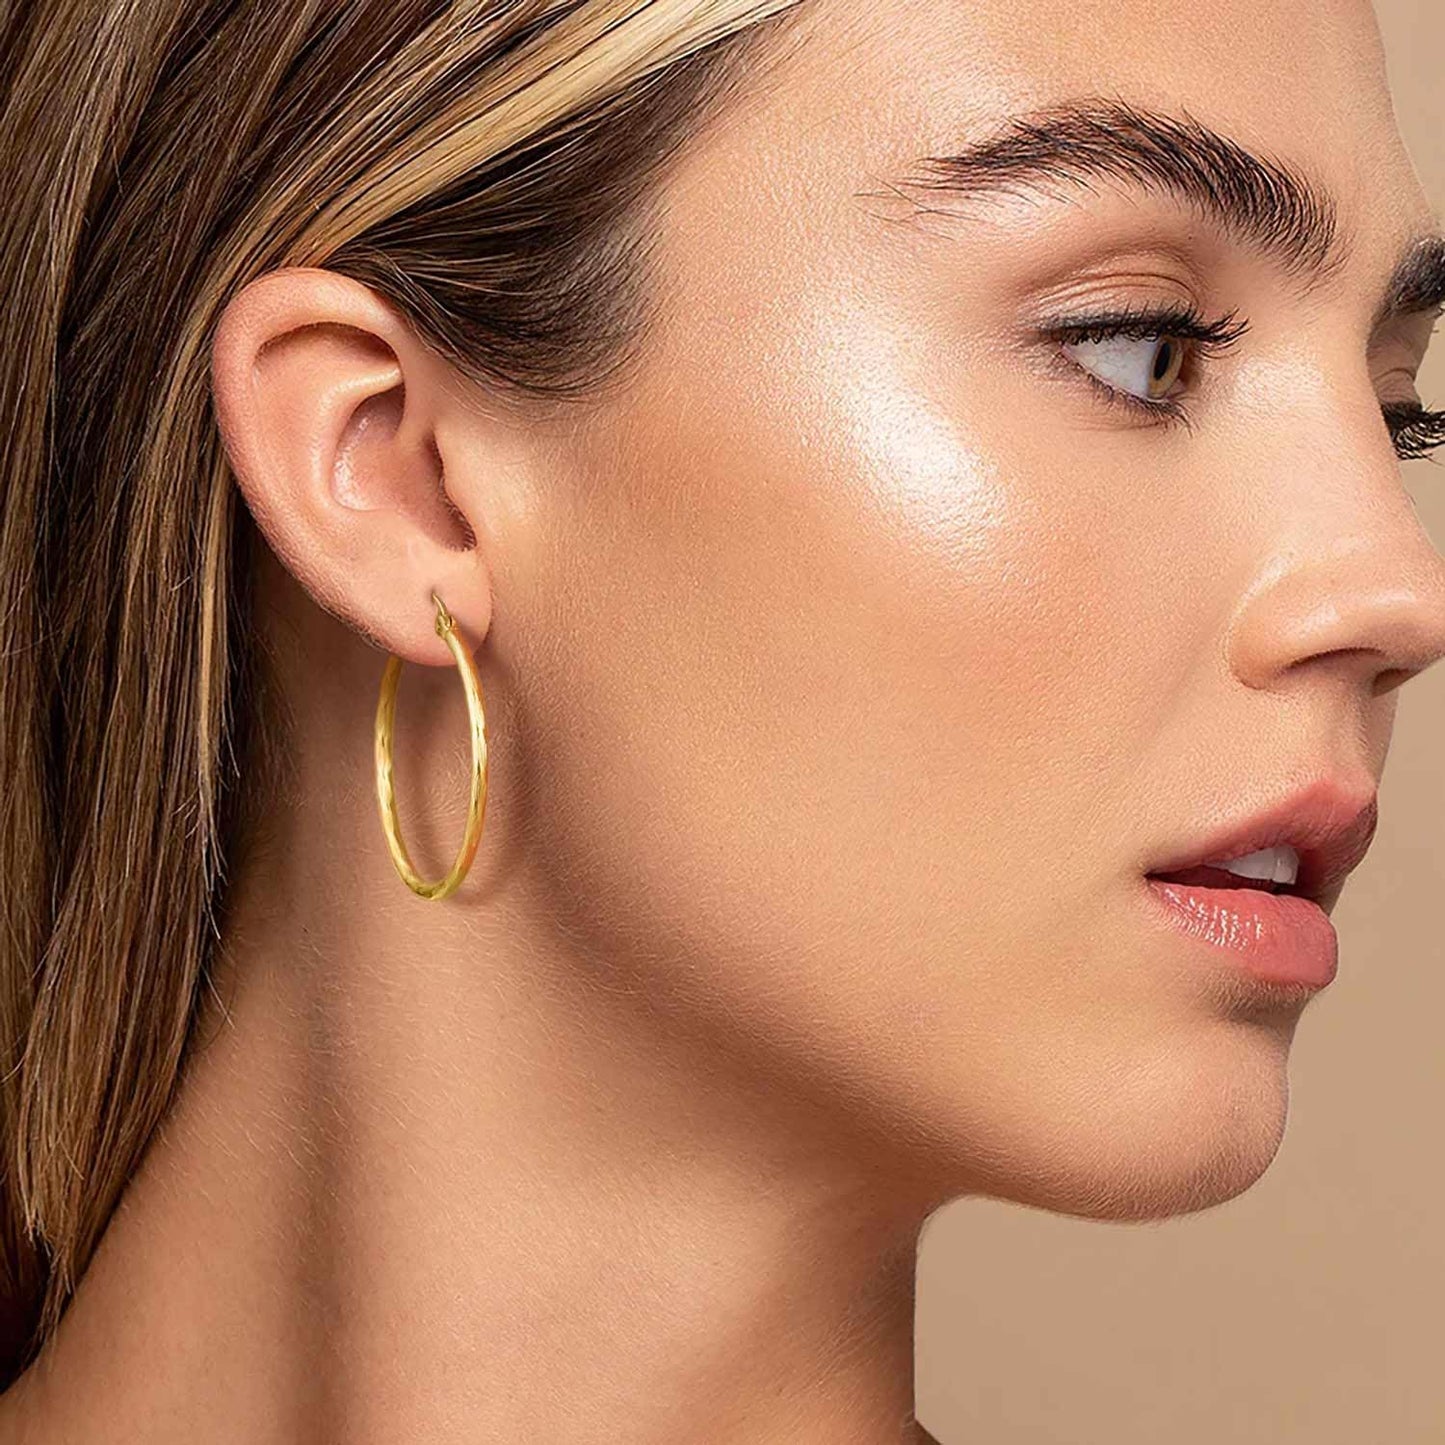 14K Gold Earrings Large Earrings Hoop Earrings for Women Hypoallergenic Gold Earrings Gold Jewelry (35mm)